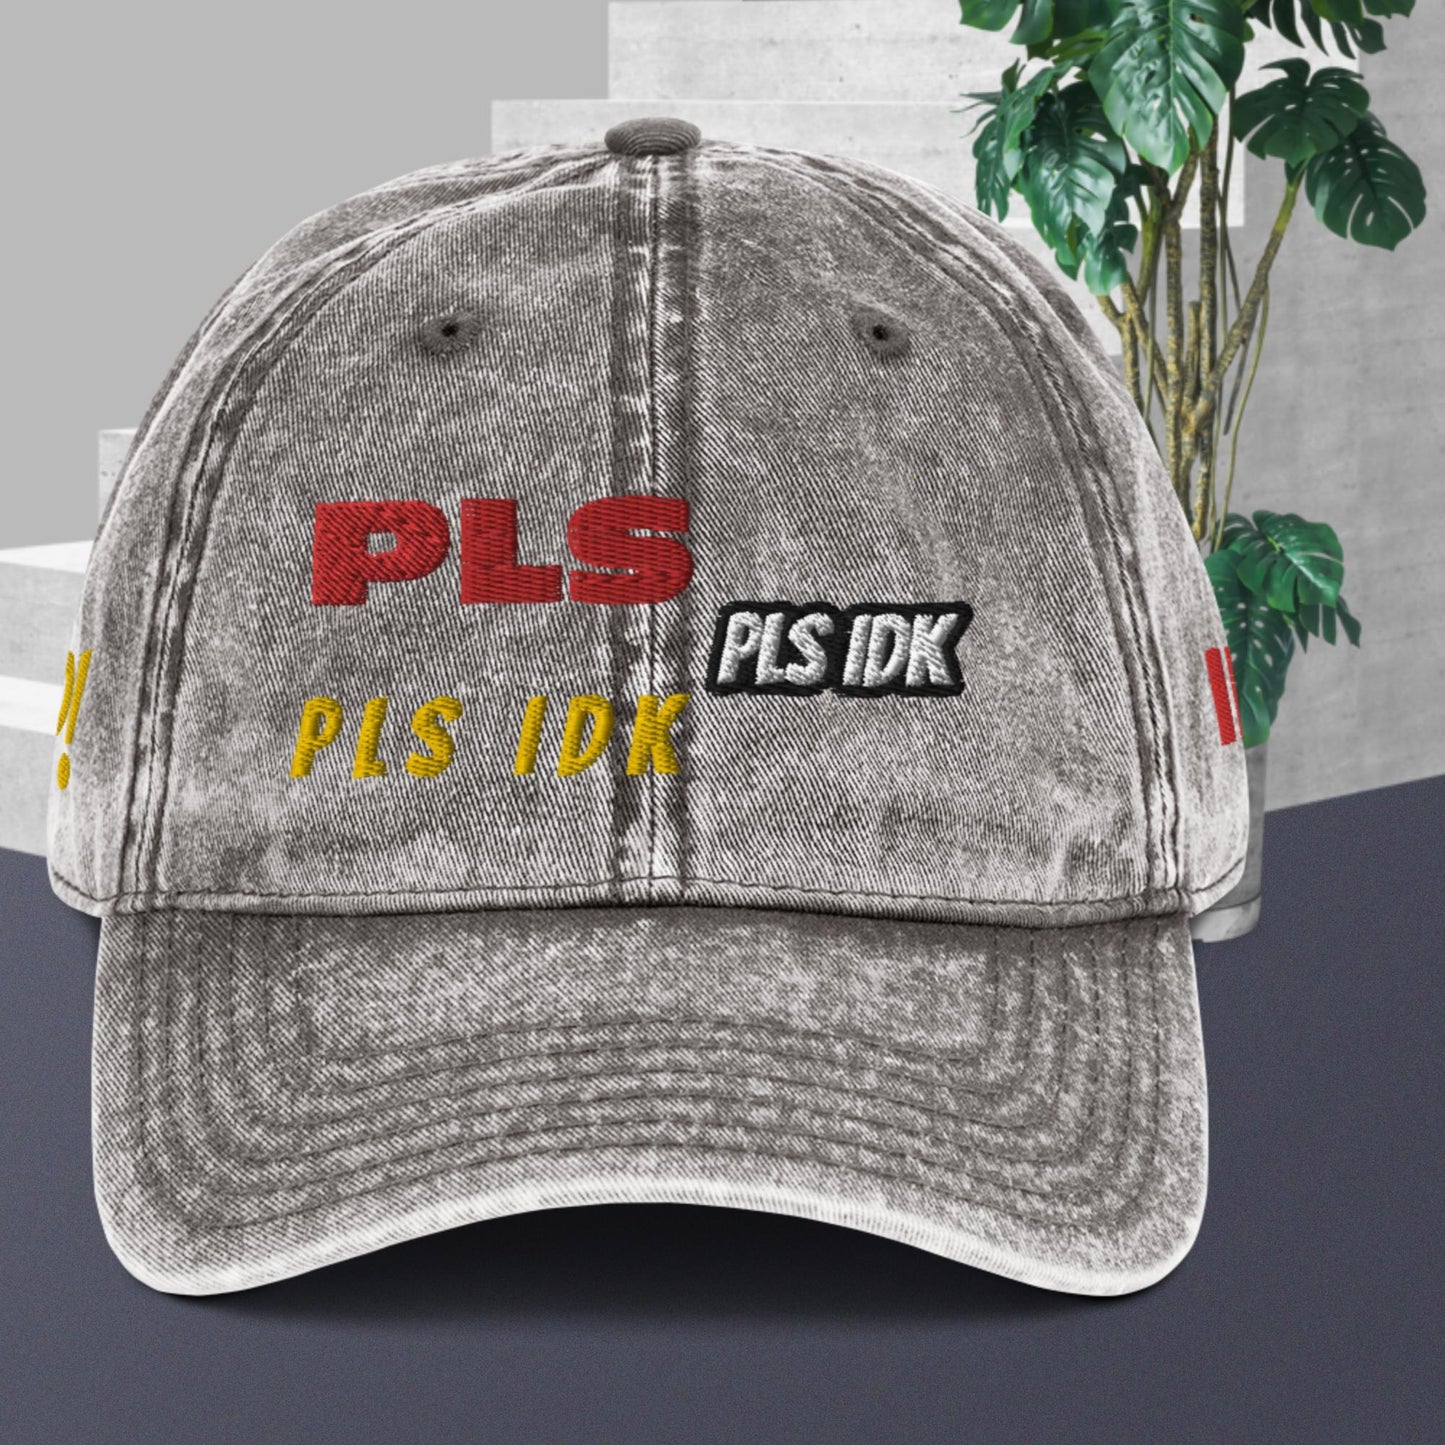 PLS IDK HAT